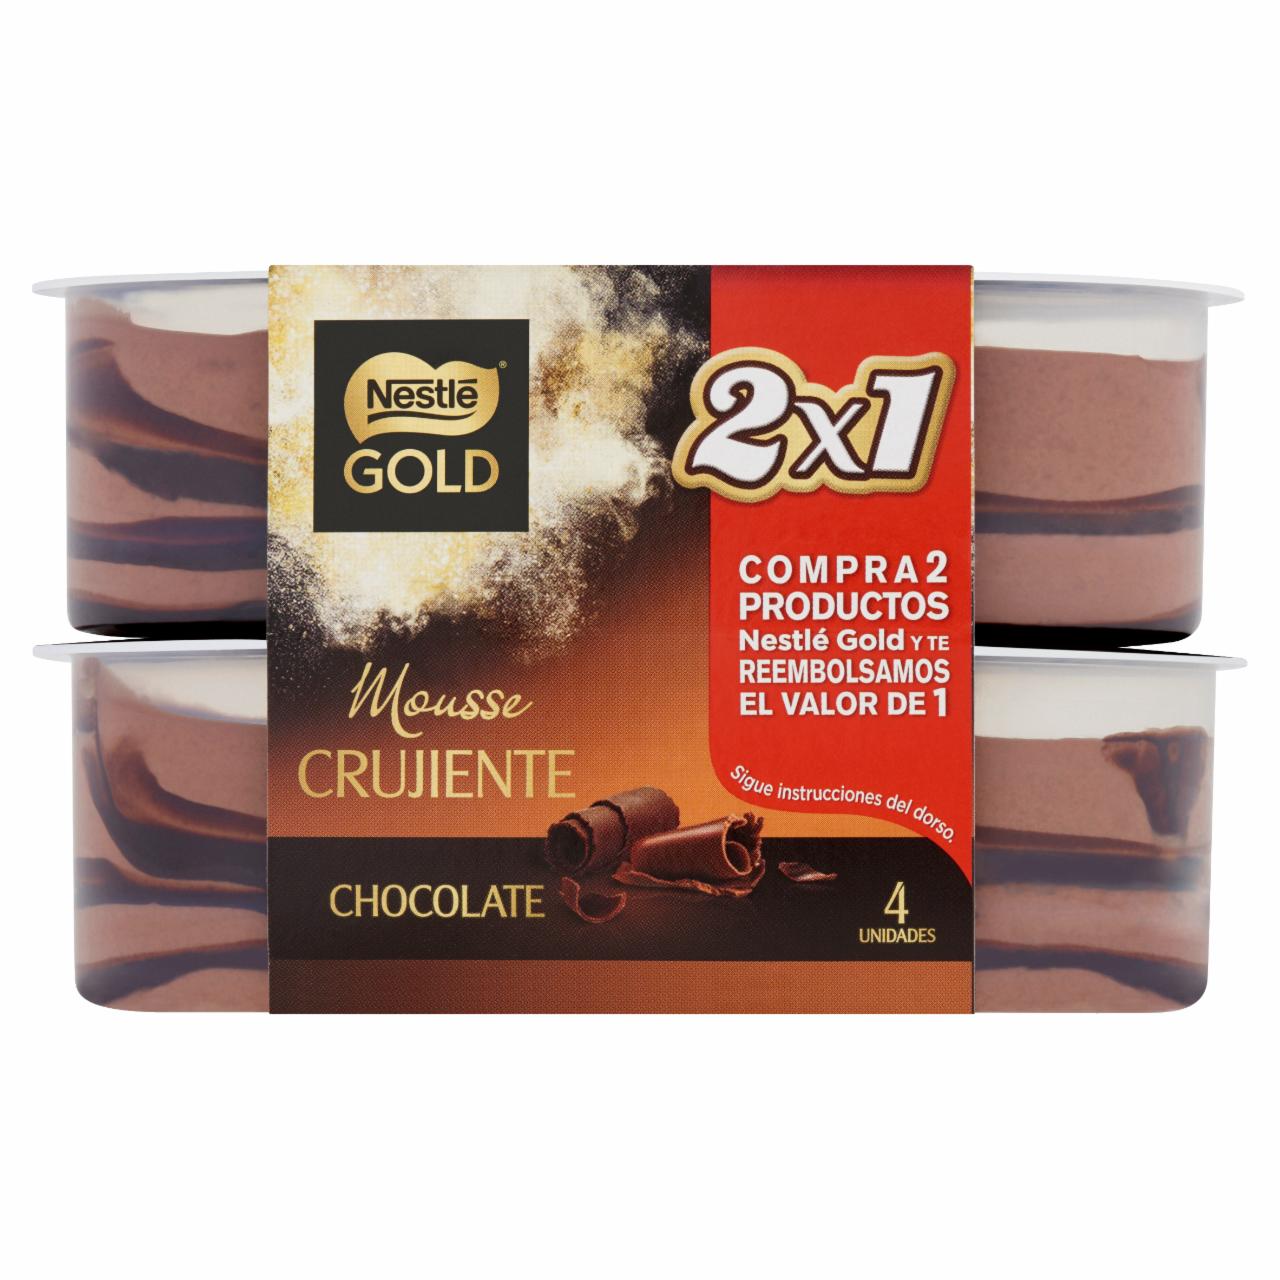 Képek - Nestlé Gold csokoládés tejhab kakaós réteggel, cukorral és édesítőszerekkel 4 x 57 g